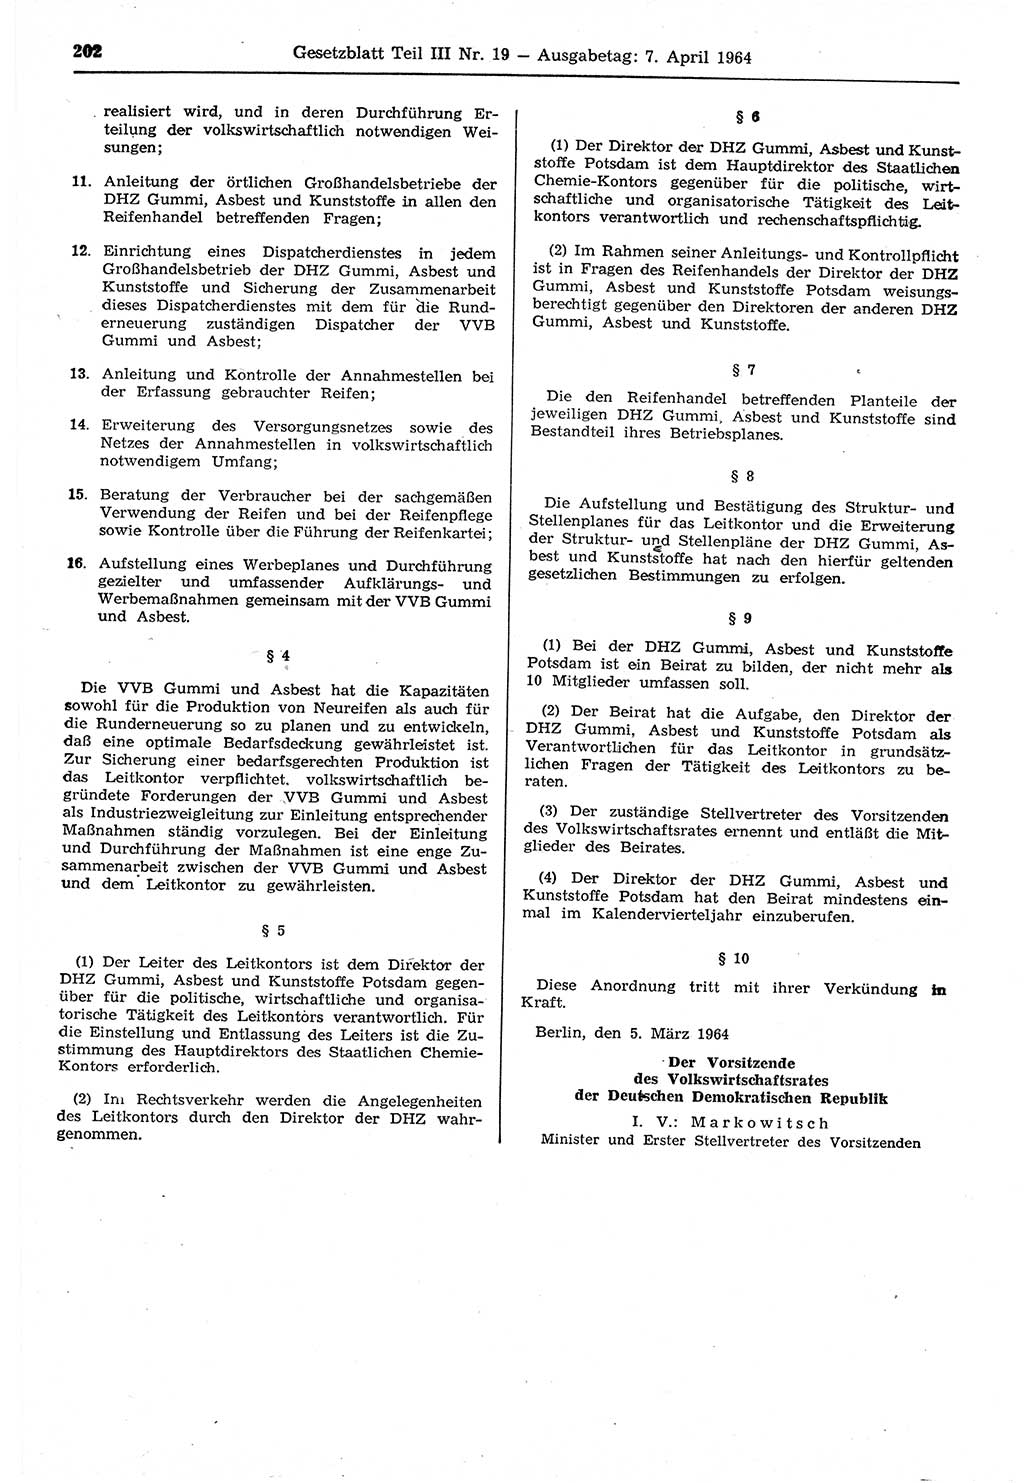 Gesetzblatt (GBl.) der Deutschen Demokratischen Republik (DDR) Teil ⅠⅠⅠ 1964, Seite 202 (GBl. DDR ⅠⅠⅠ 1964, S. 202)